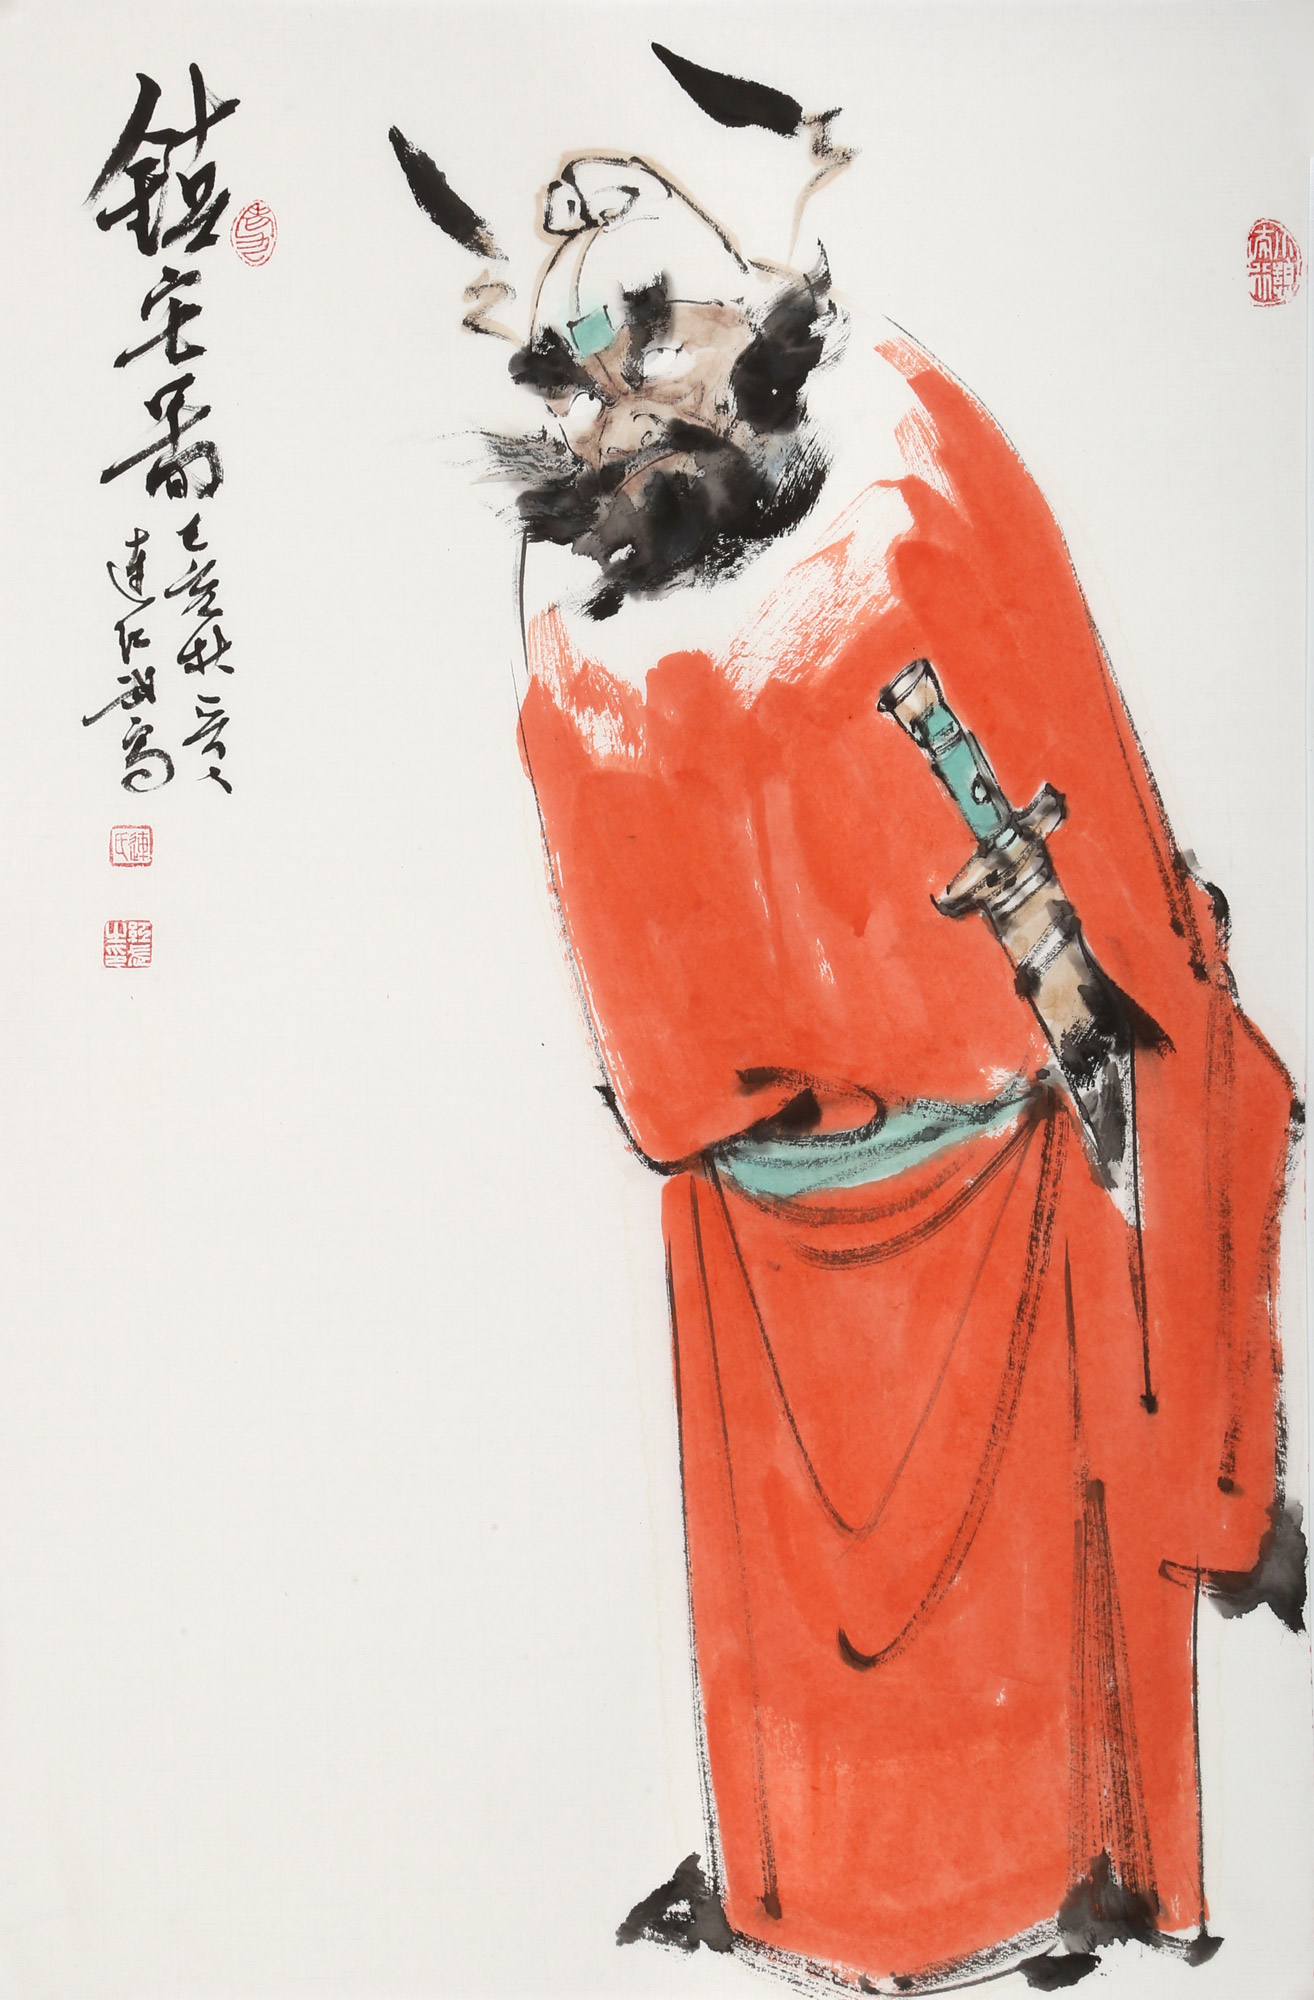 传统水墨 人物画 佛禅高士 500-1000元 四尺横幅 名家专栏: 连红武(1)